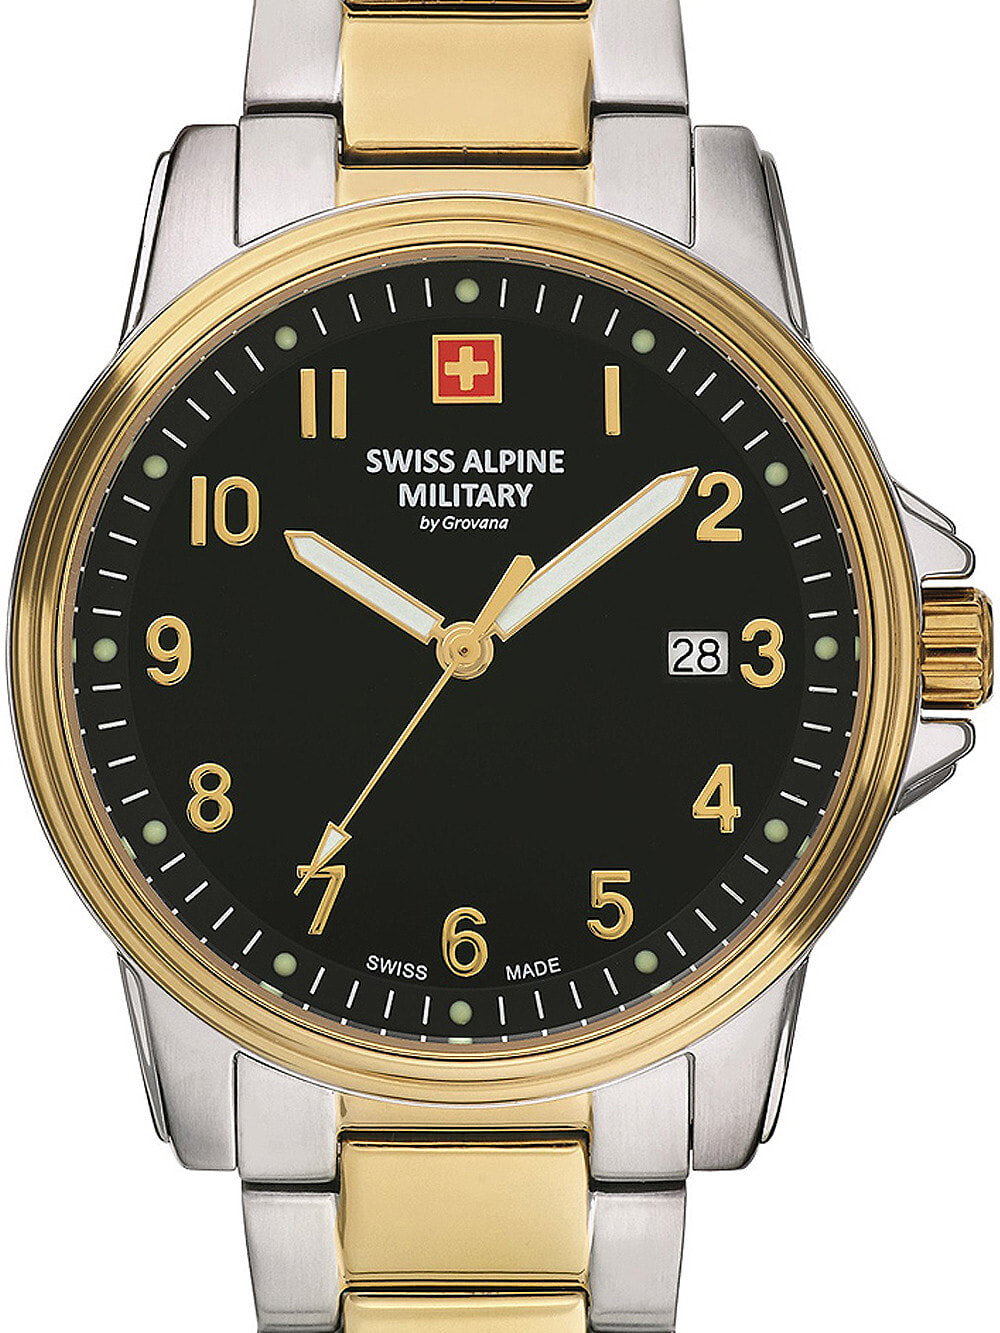 Мужские наручные часы с серебряным браслетом Swiss Alpine Military 7011.1147 mens 40mm 10ATM